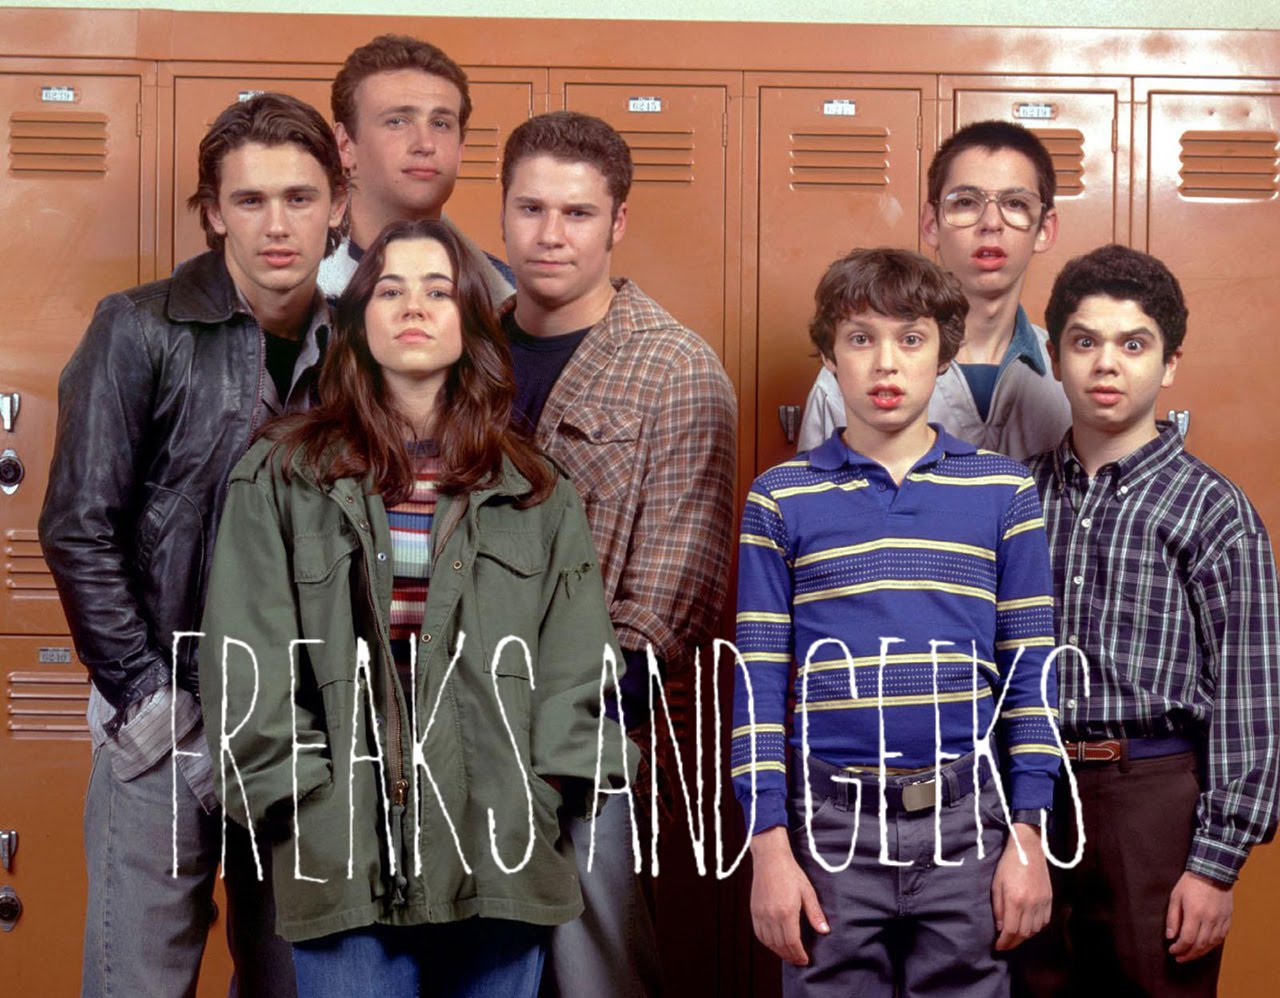 [SÉRIE] “Freaks and Geeks”: uma das melhores séries sobre a adolescência